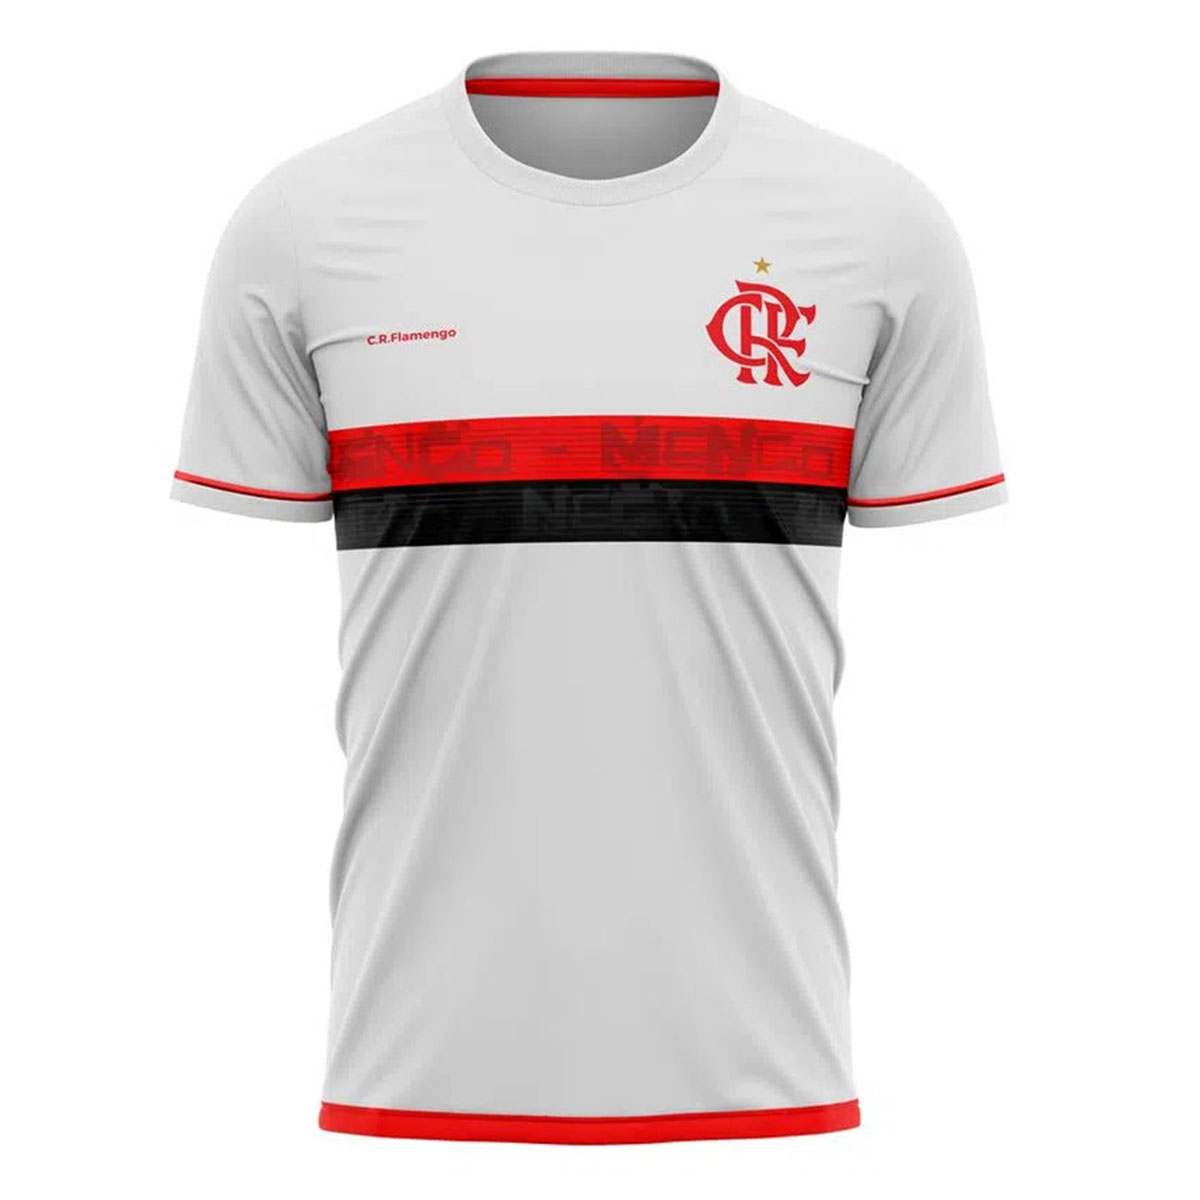 Camisa do Flamengo Original Masculina Listrada Braziline FC - Vermelho